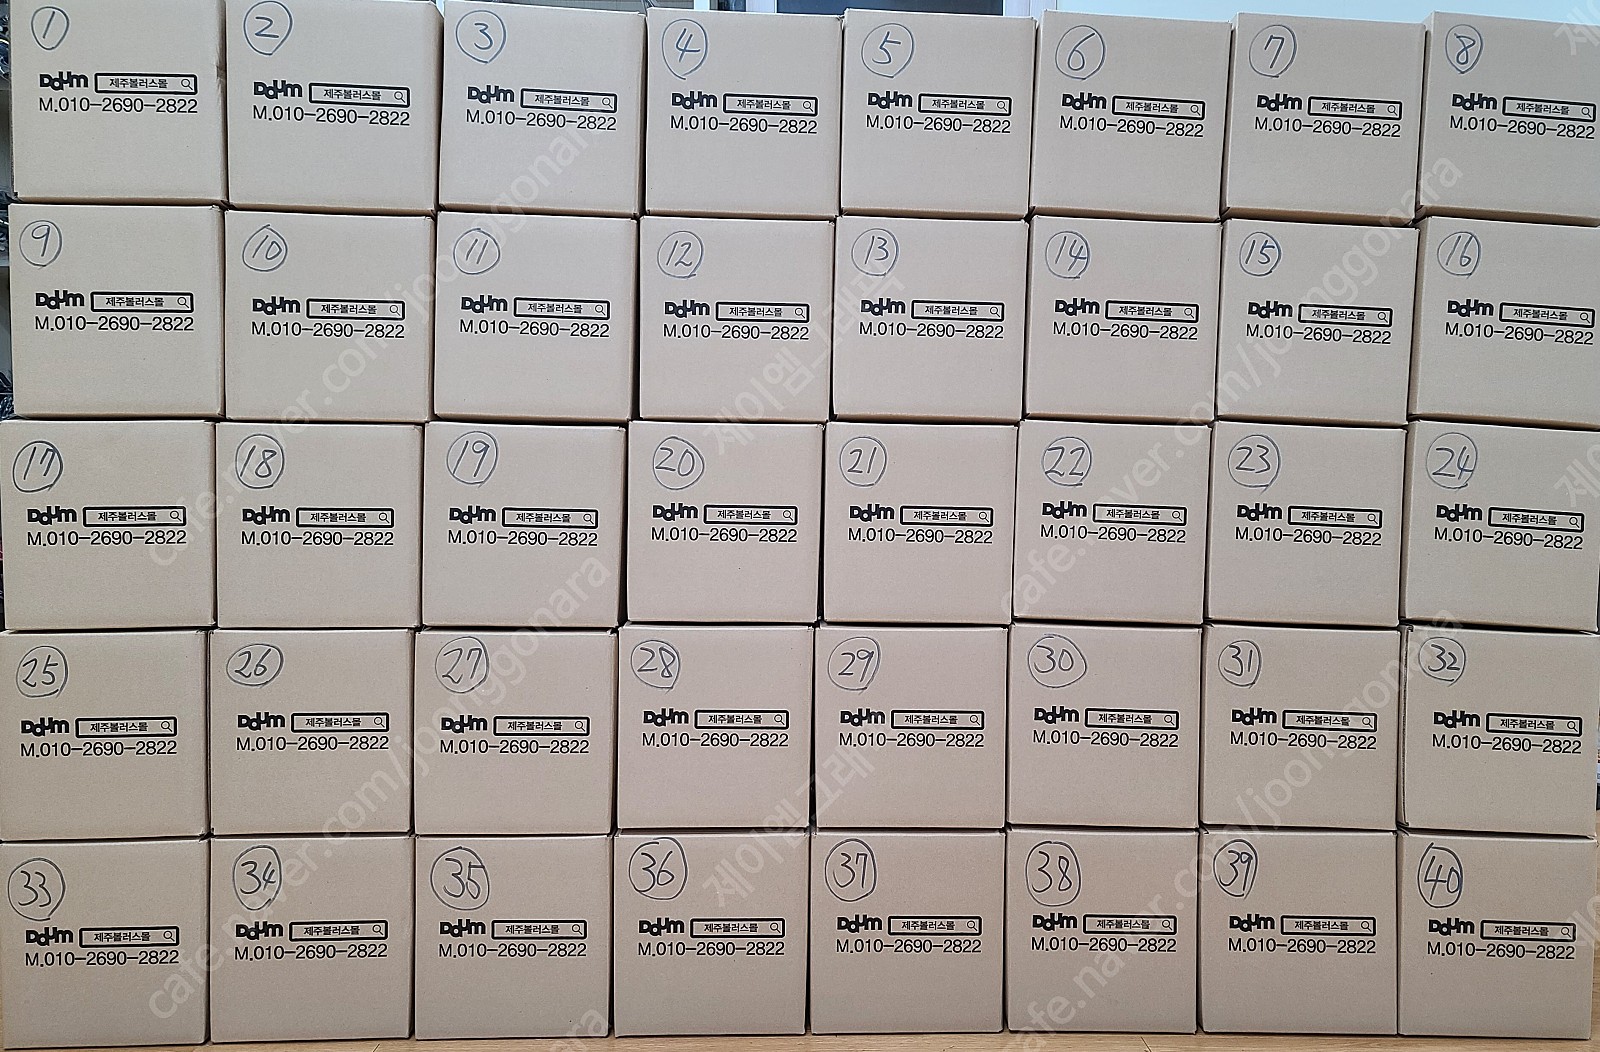 새볼링공 - 2개남음(스톰 최신형 노바, 900글로벌 최신형 얼터드 리얼리티, 스톰 스텔라 패럴랙스 등)공인구 15파운드 미박 40개 판매합니다.